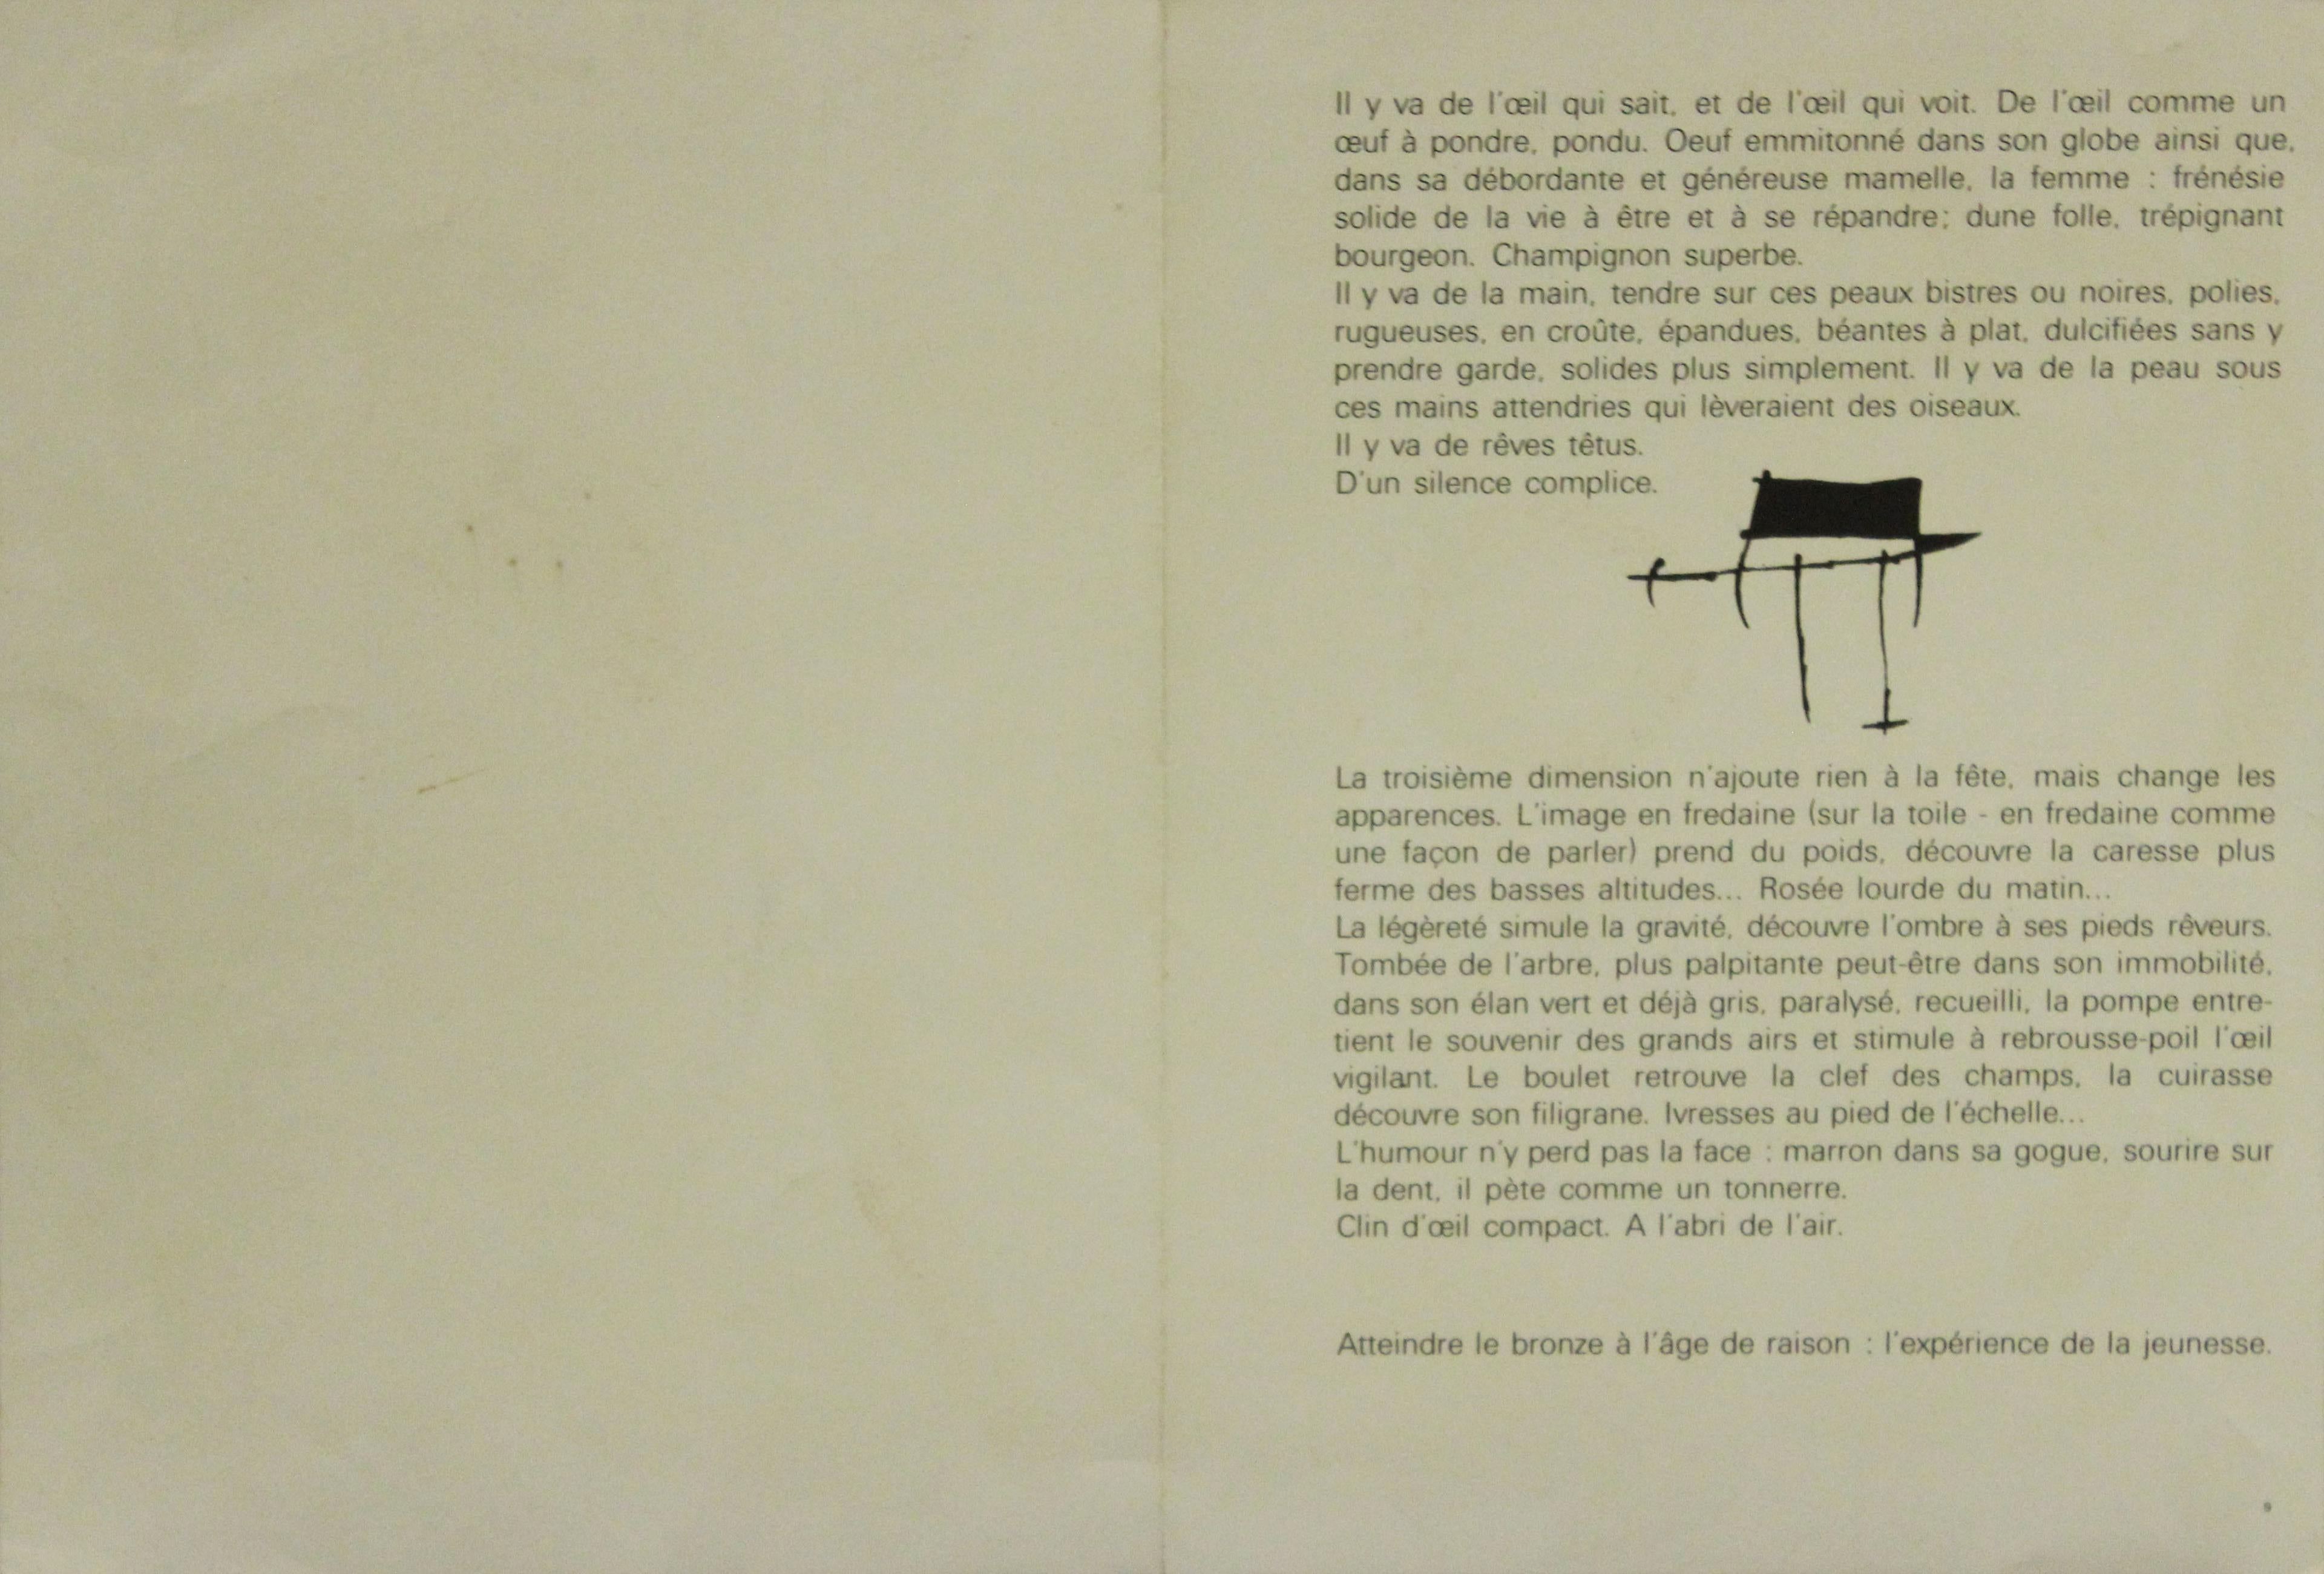 “Ronde de Nuit”, page from Derrière le miroir, 1970 - Print by Joan Miró